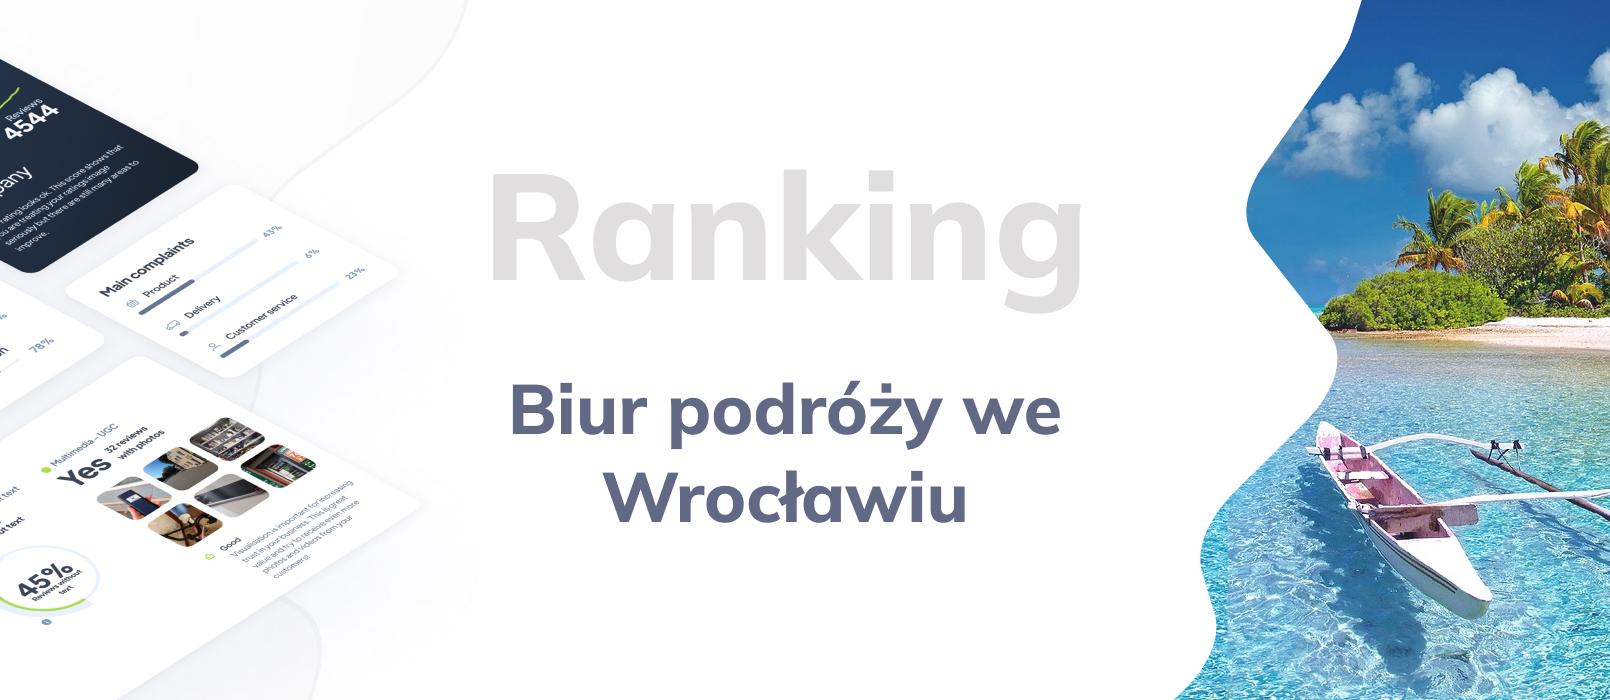 Biura podróży we Wrocławiu - ranking TOP 10